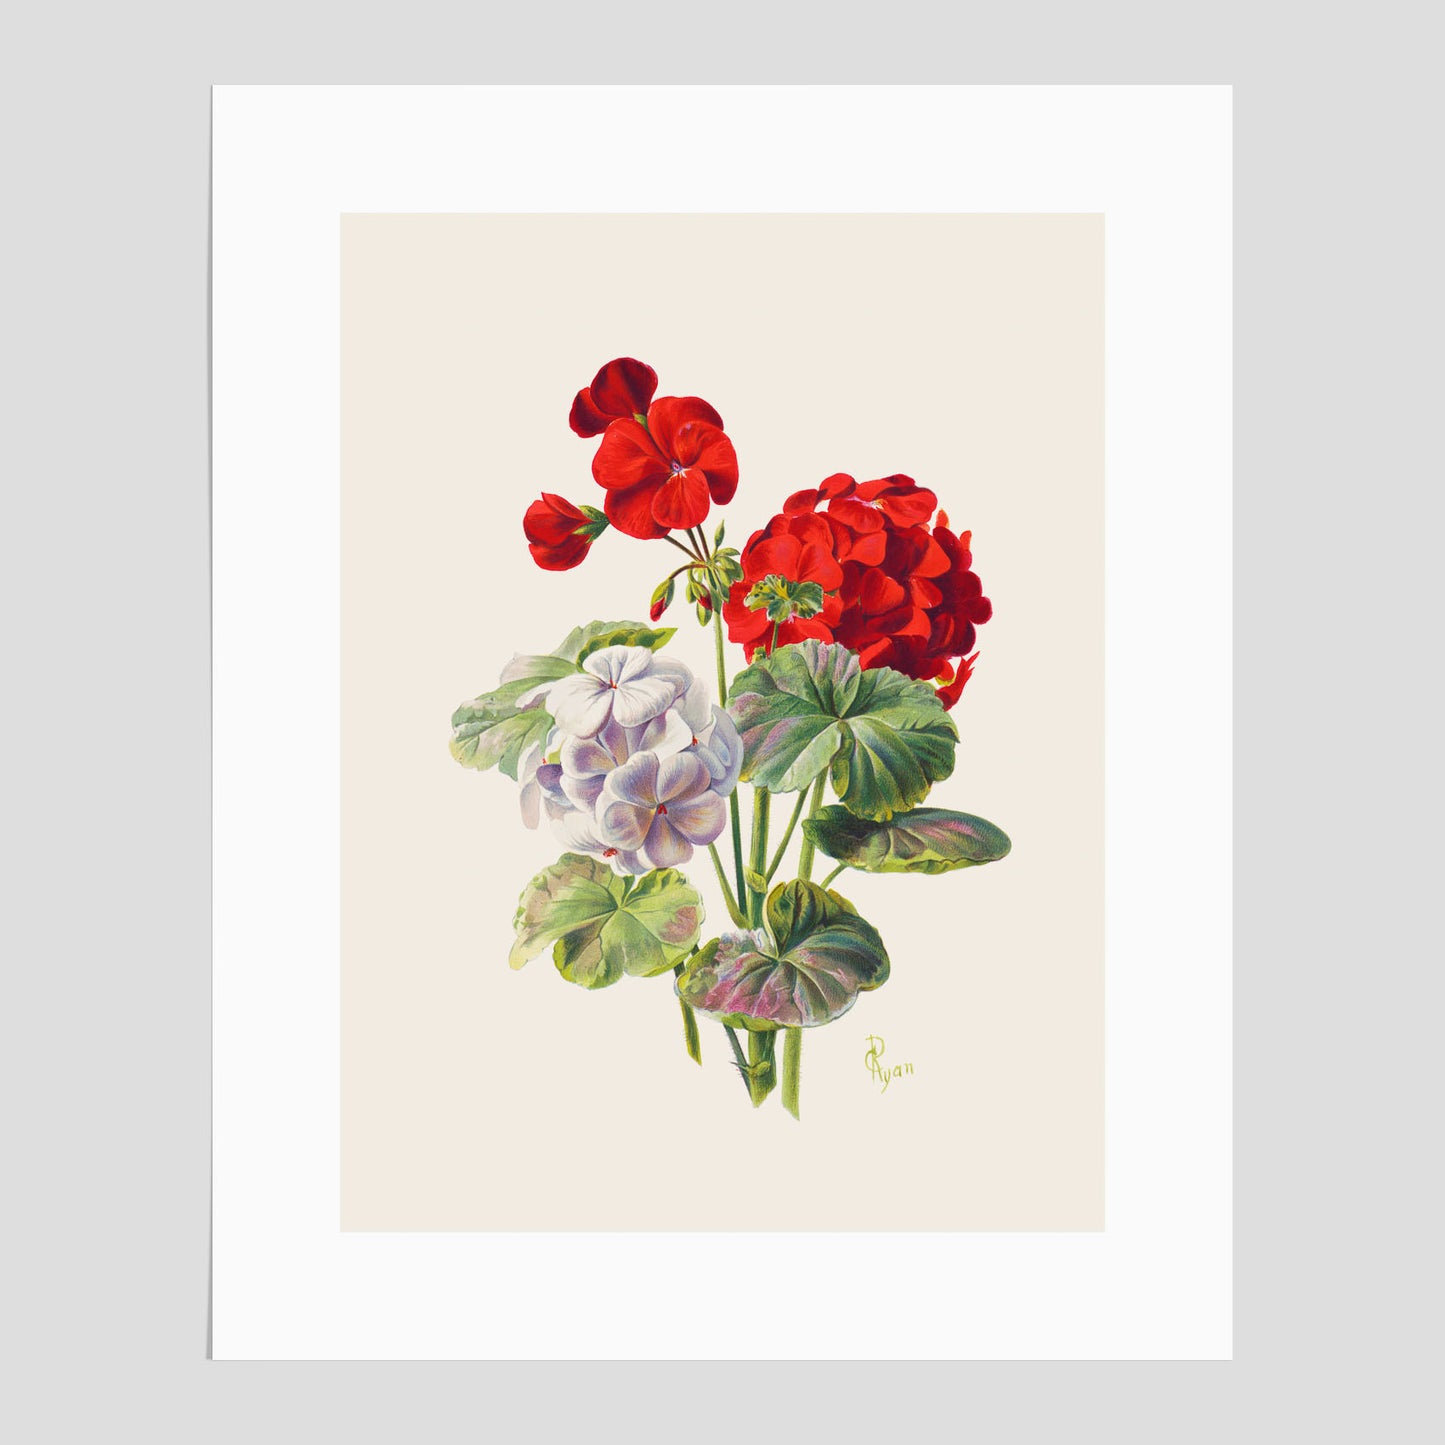 En botanisk vintageposter med en illustration av en geraniumväxt med röda och vita blommor ritad av Charles Ryan